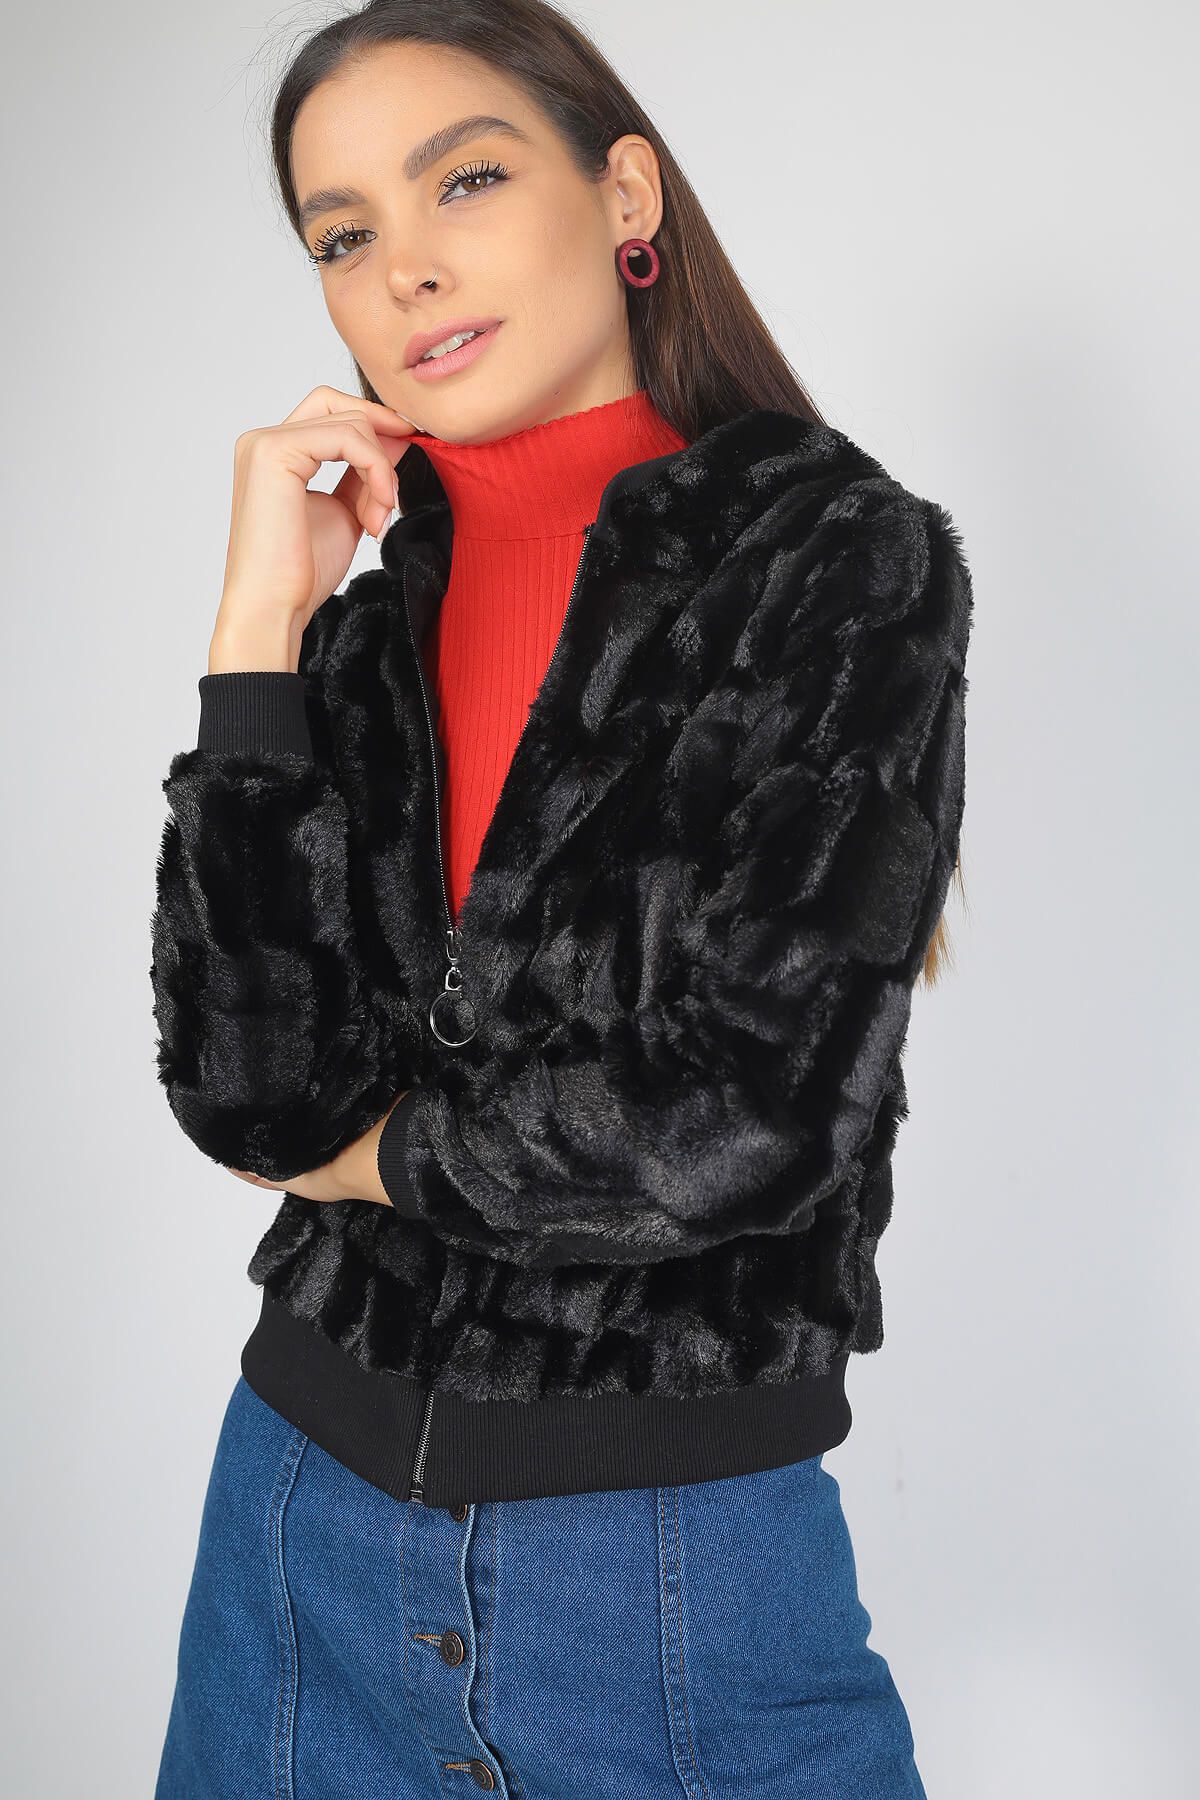 By Saygı Kadın Siyah Kapüşonlu Peluş Ceket S-19K1820003